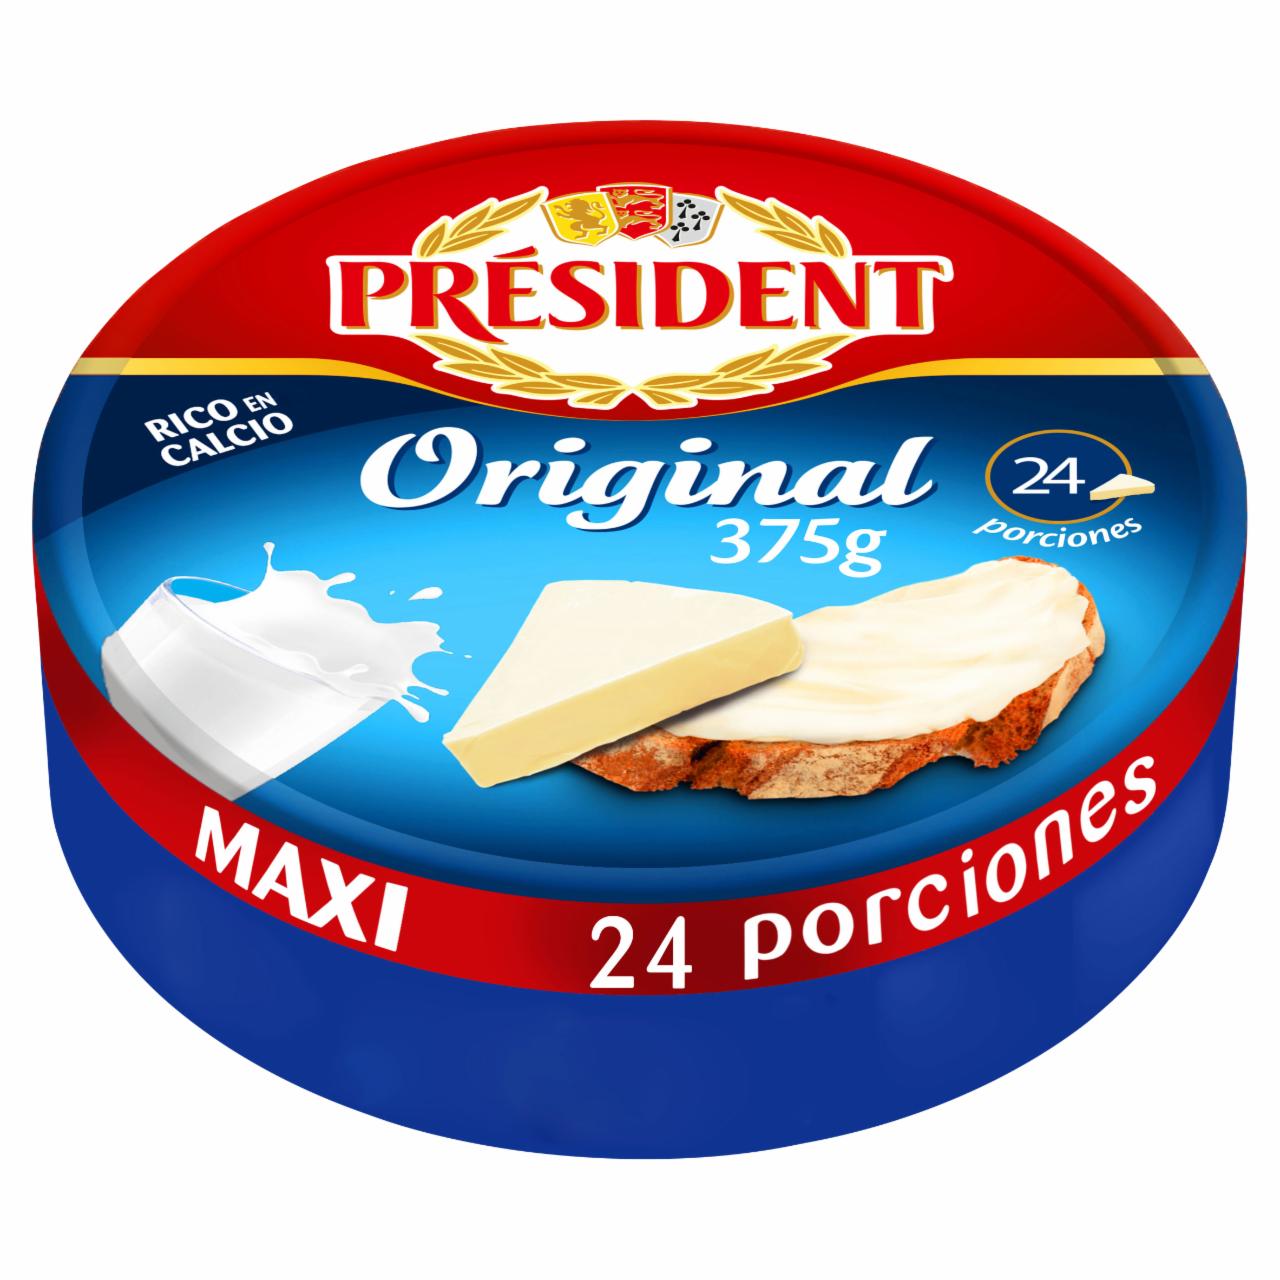 Képek - Président zsíros ömlesztett sajt 375 g